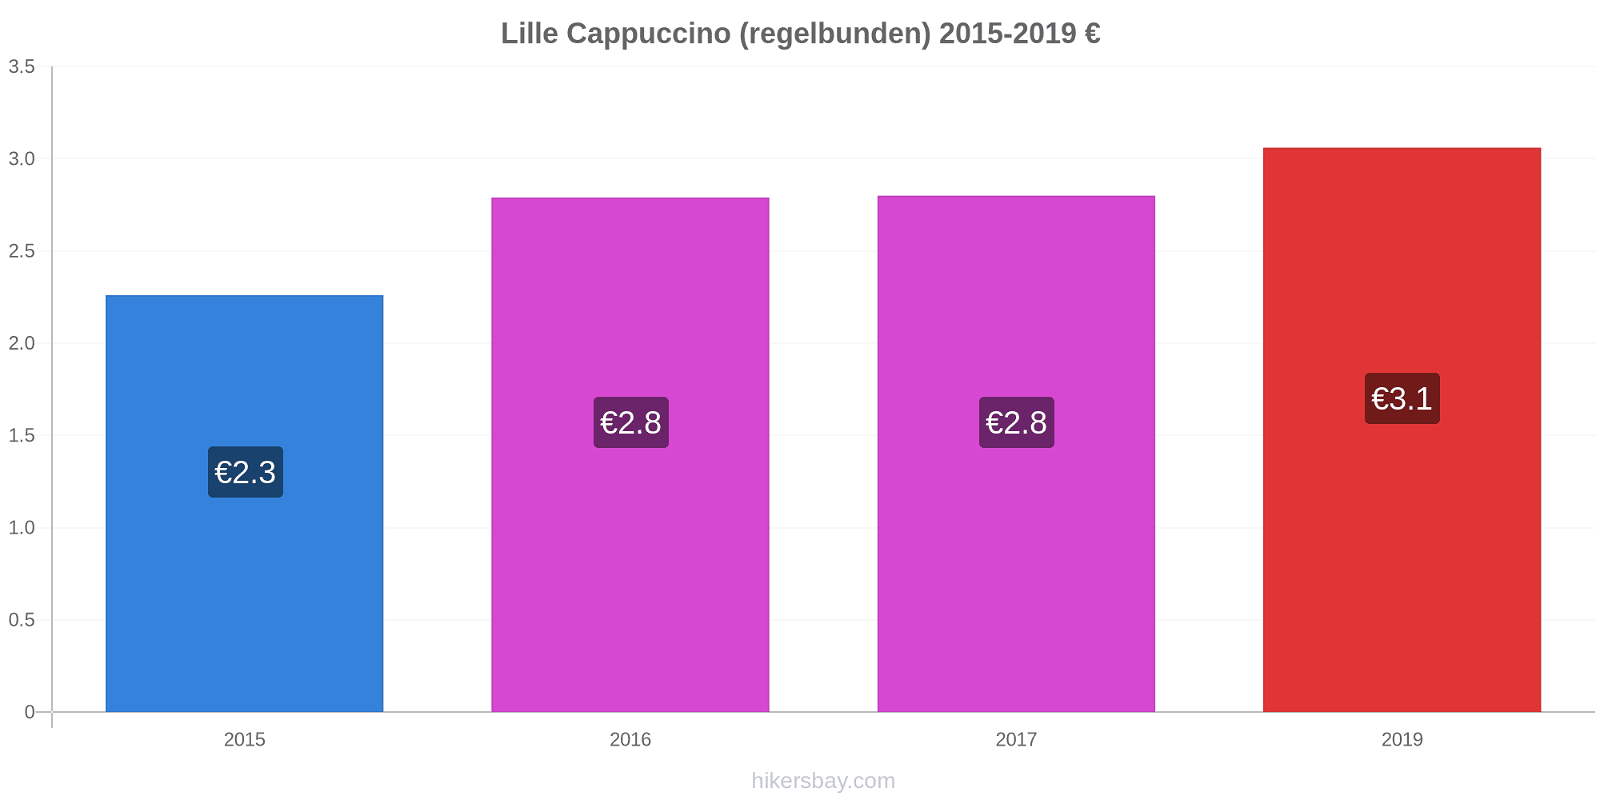 Lille prisförändringar Cappuccino (regelbunden) hikersbay.com